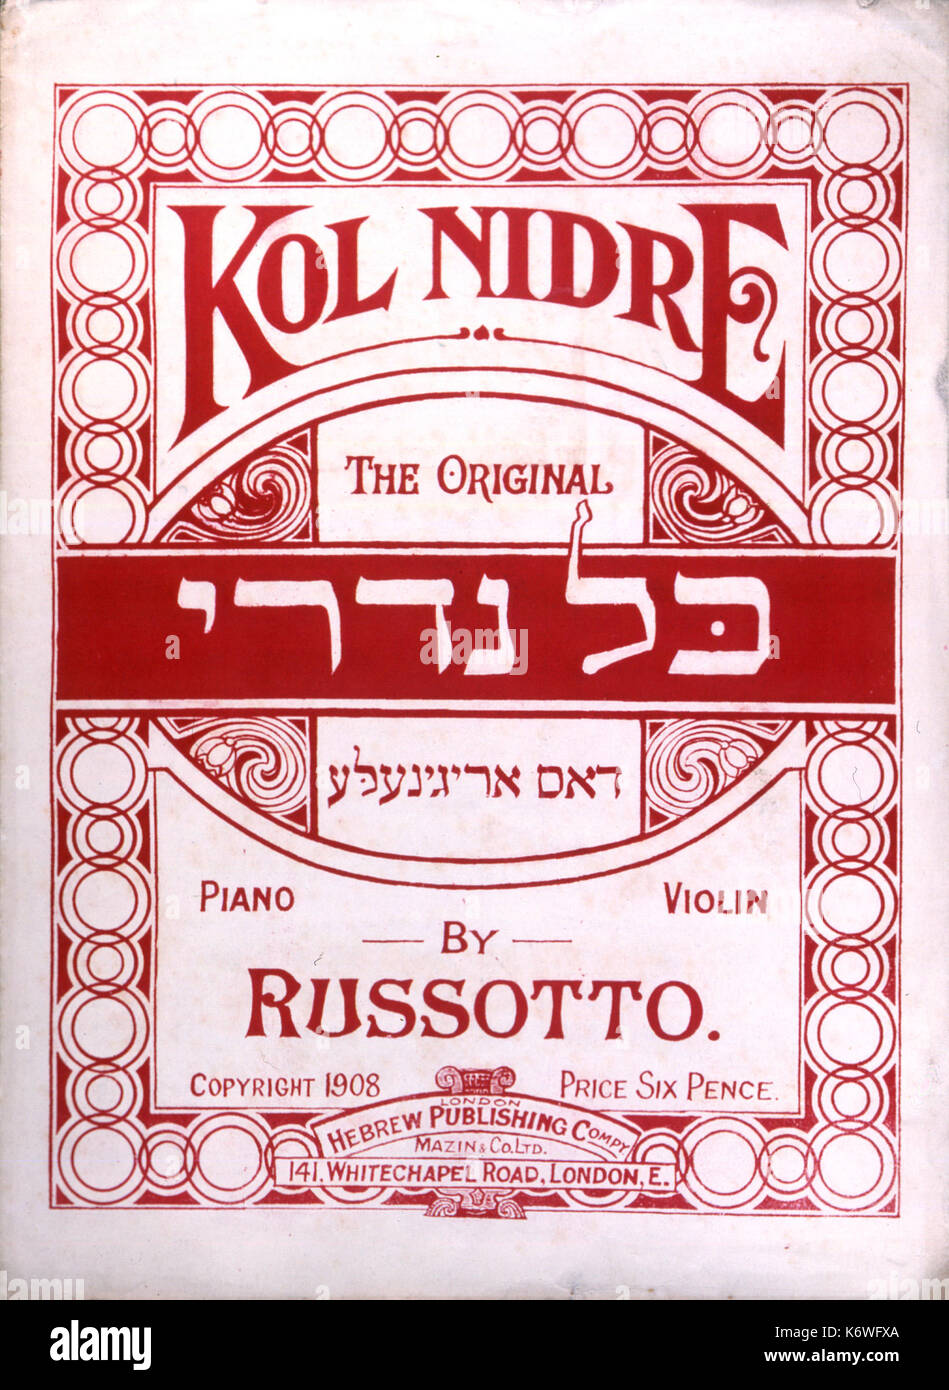 La musique juive - KOL NIDRÉ Couverture de score pour l'arrangement pour piano 7 voix par RUSSOTTO, 1908. La prière chantée à Yom Kippour. BRUCH. Aussi écrit en yiddish. Banque D'Images